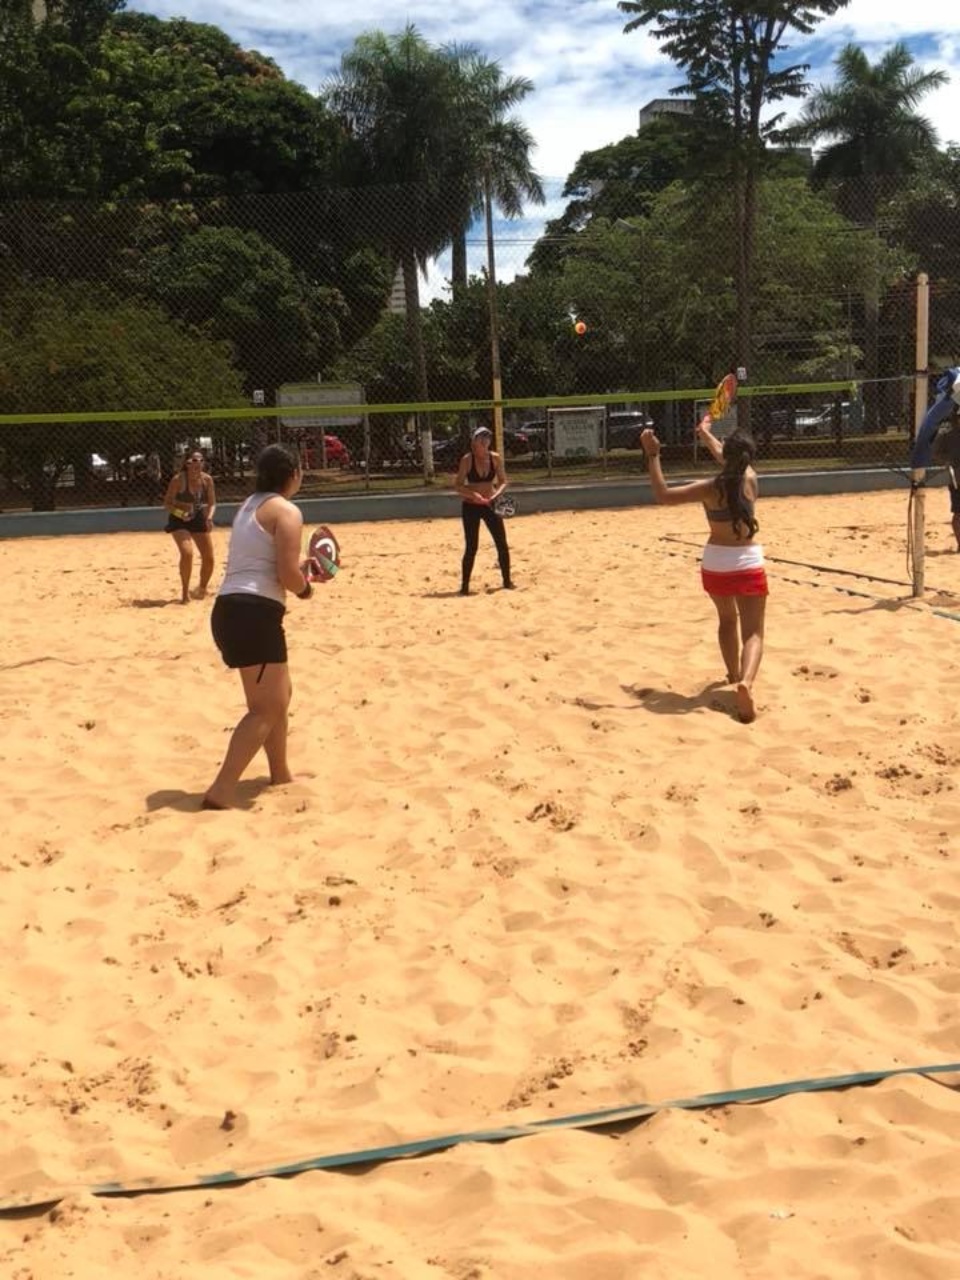 Definido reinado do beach tennis em Mato Grosso do Sul. Confira o ranking